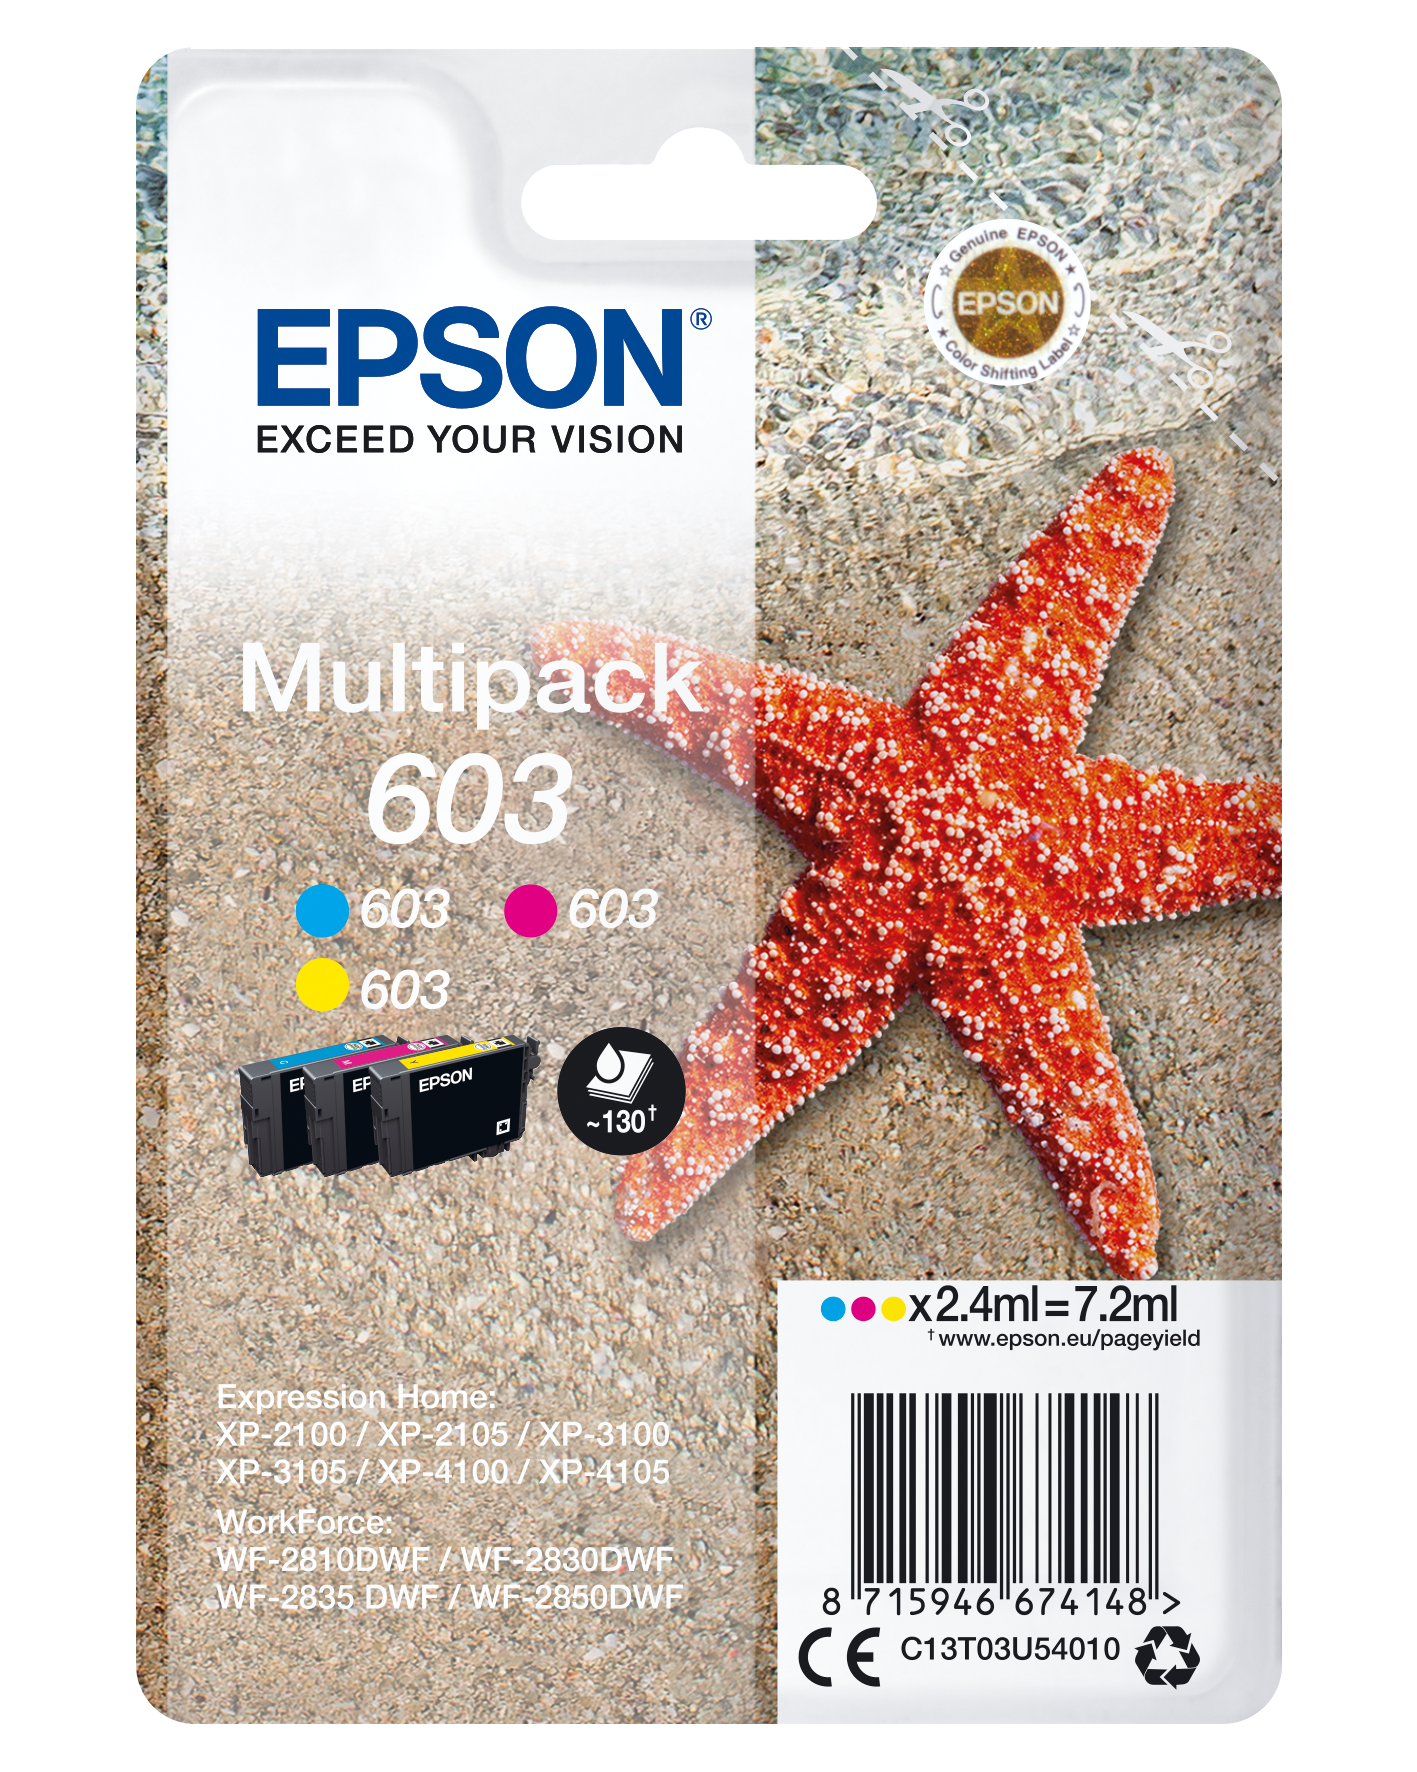 Epson 603 Etoile de mer - noir - cartouche d'encre originale